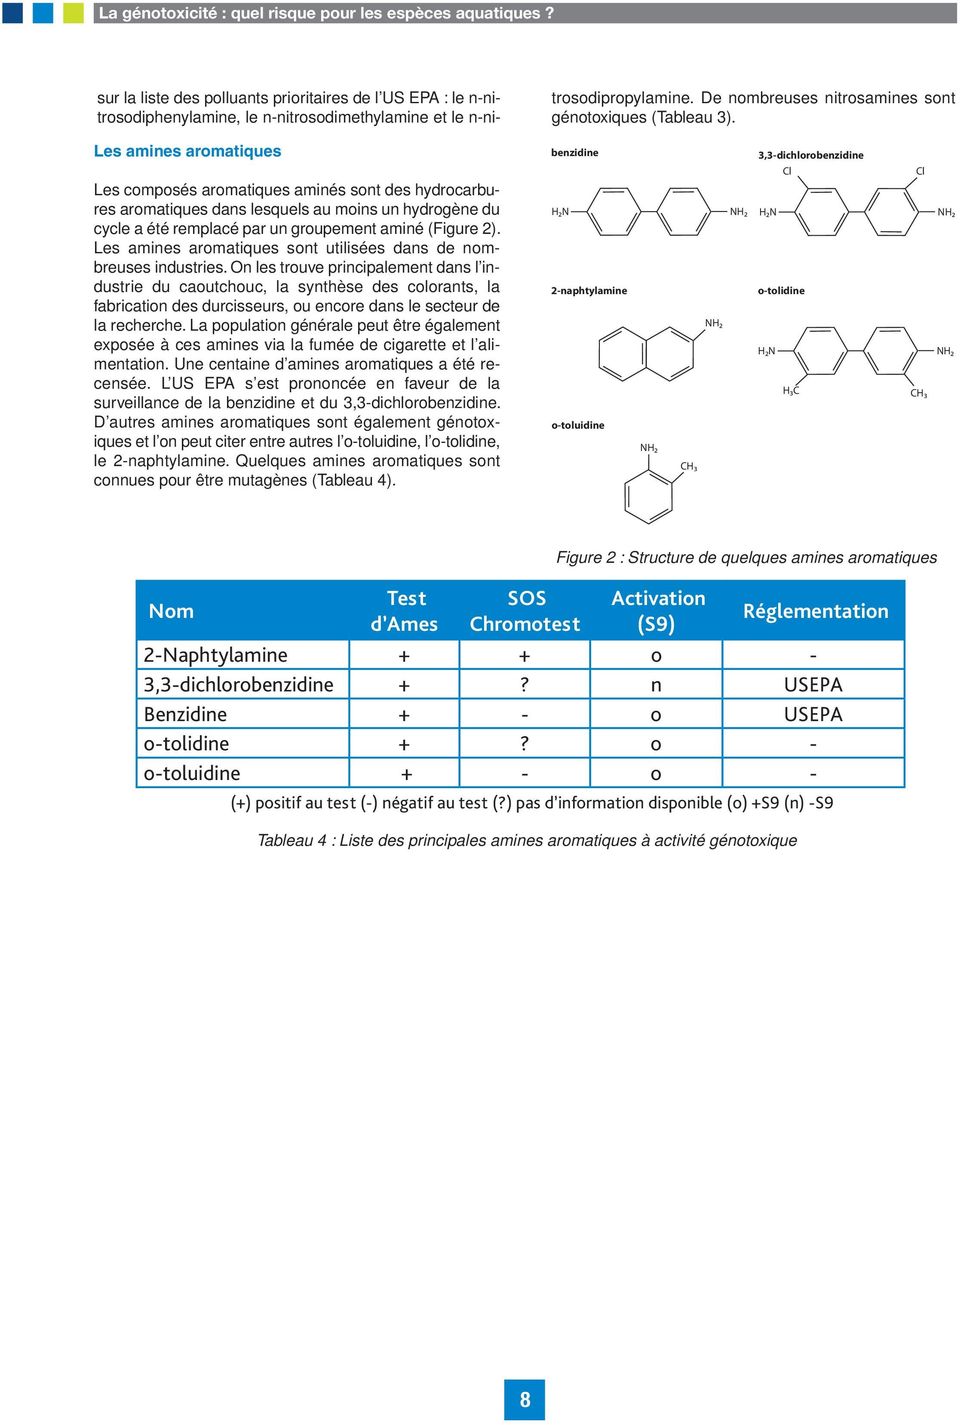 Les amines aromatiques sont utilisées dans de nombreuses industries.